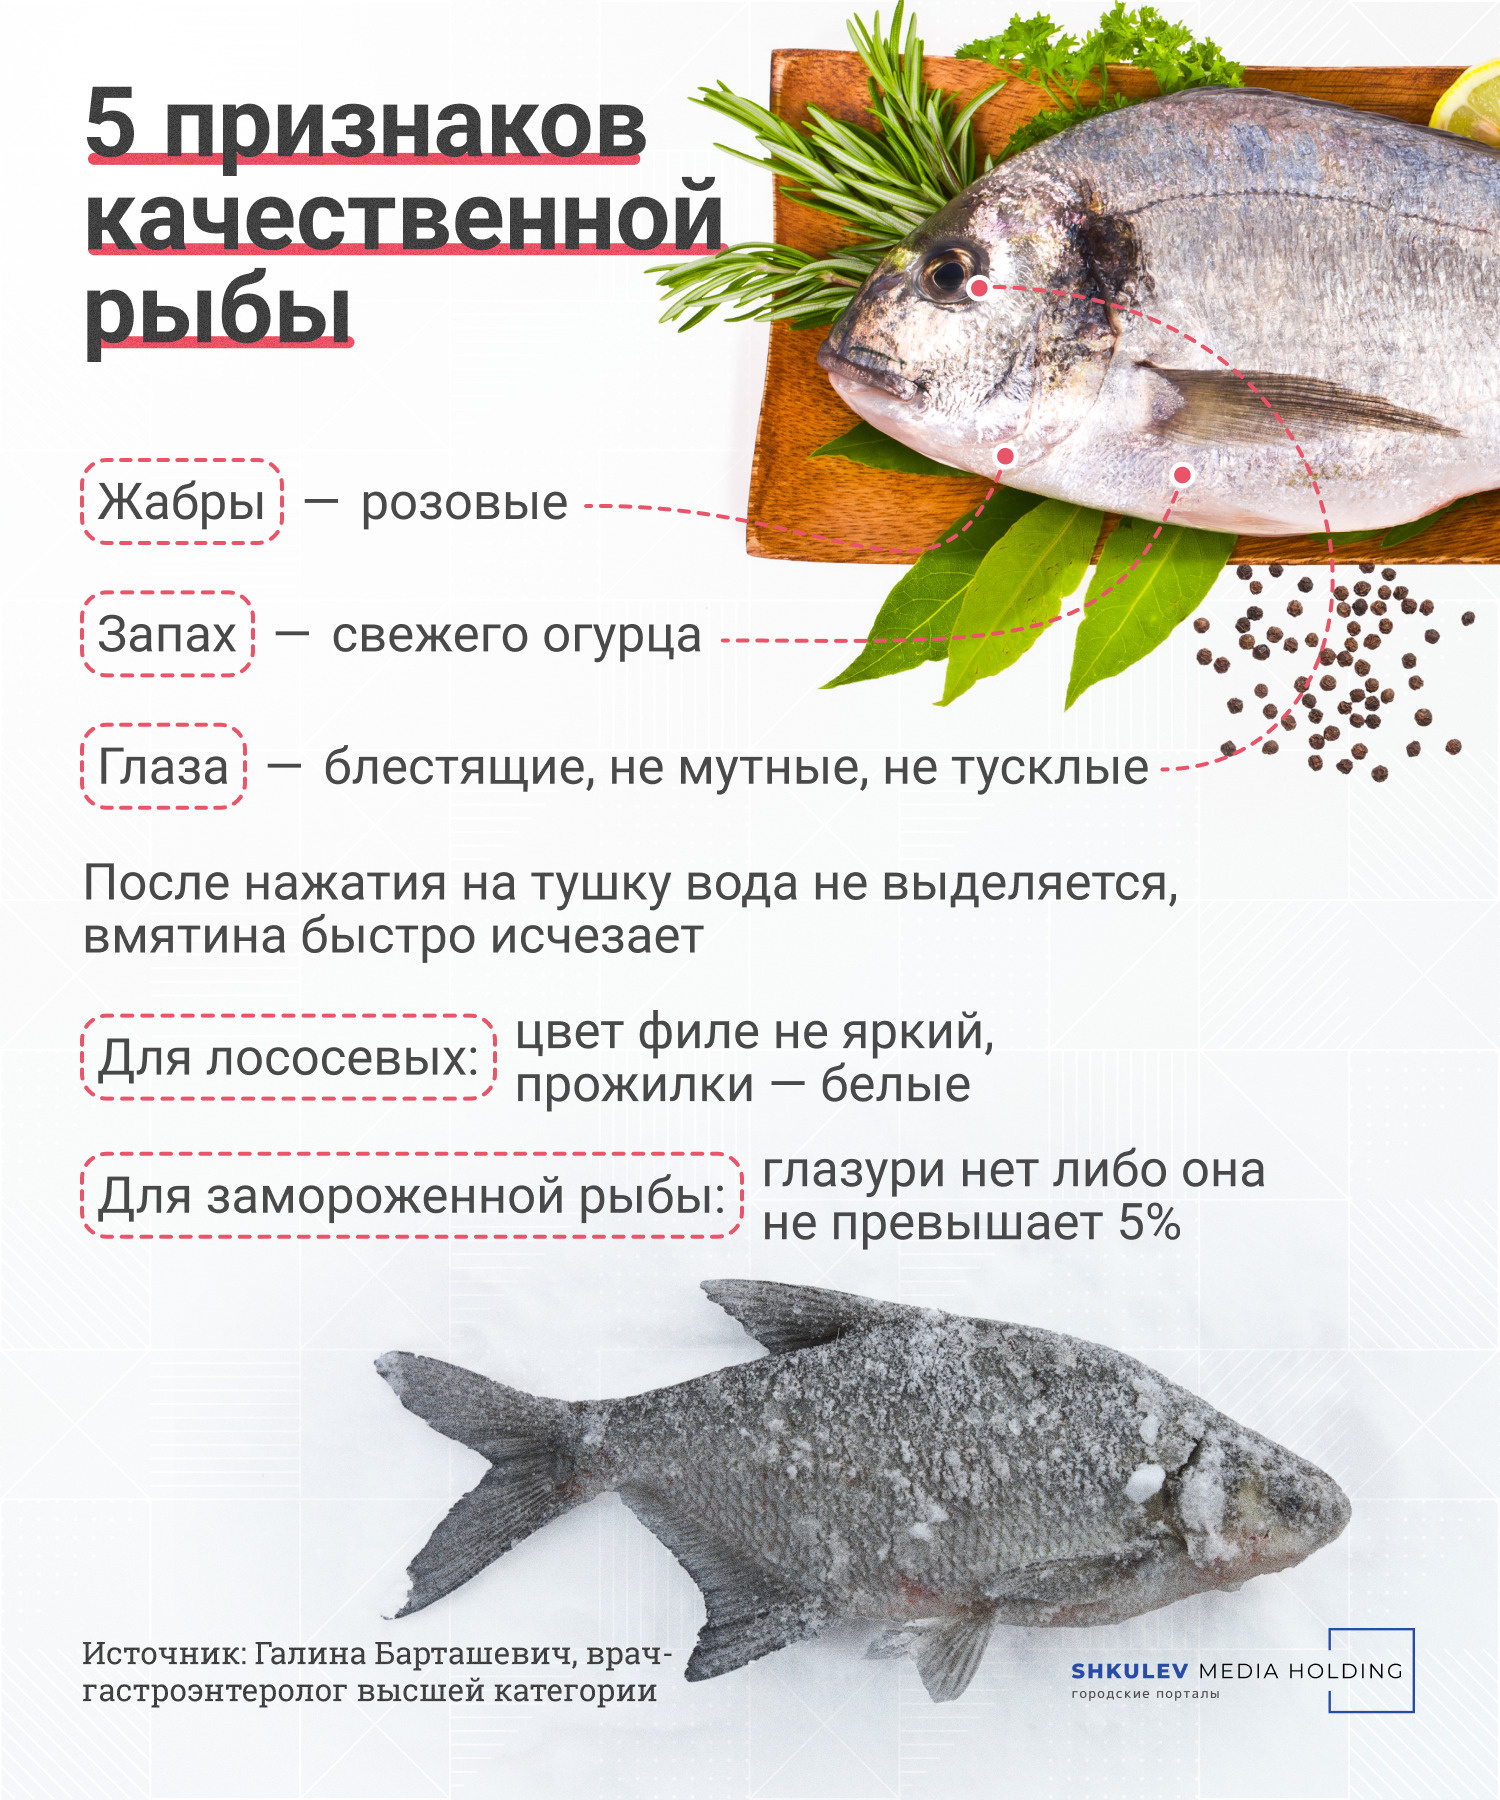 Кета или кижуч: какая рыба более жирная?